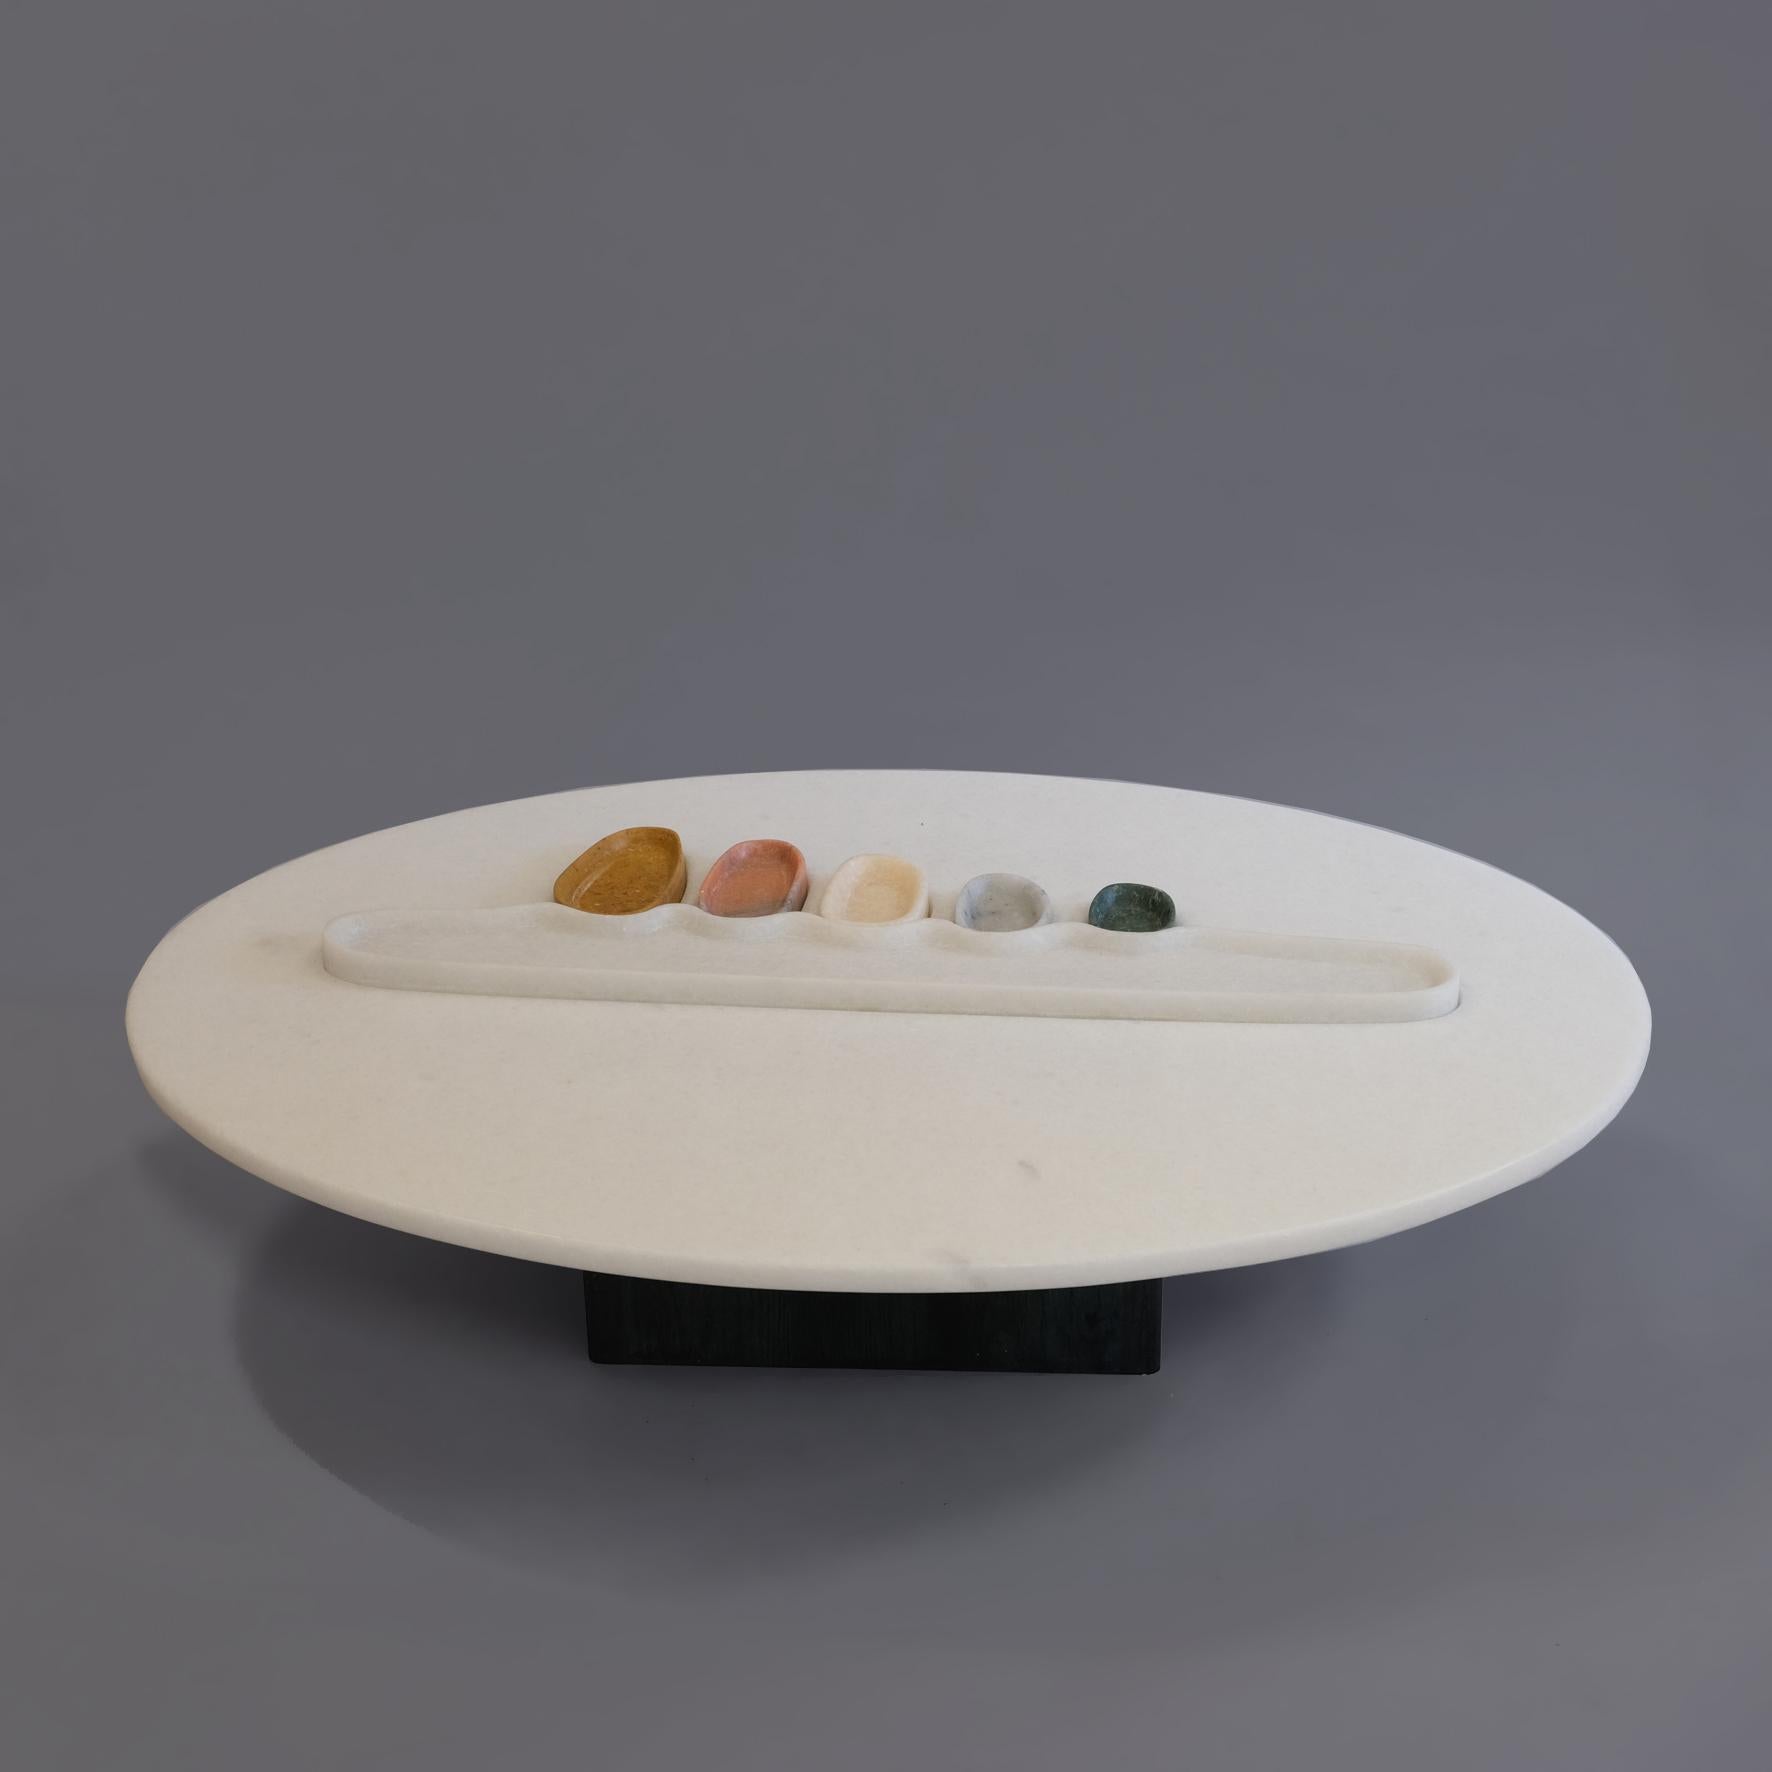 Thali, a Marble Low Table, Design by Matang and Natasha Sumant 3